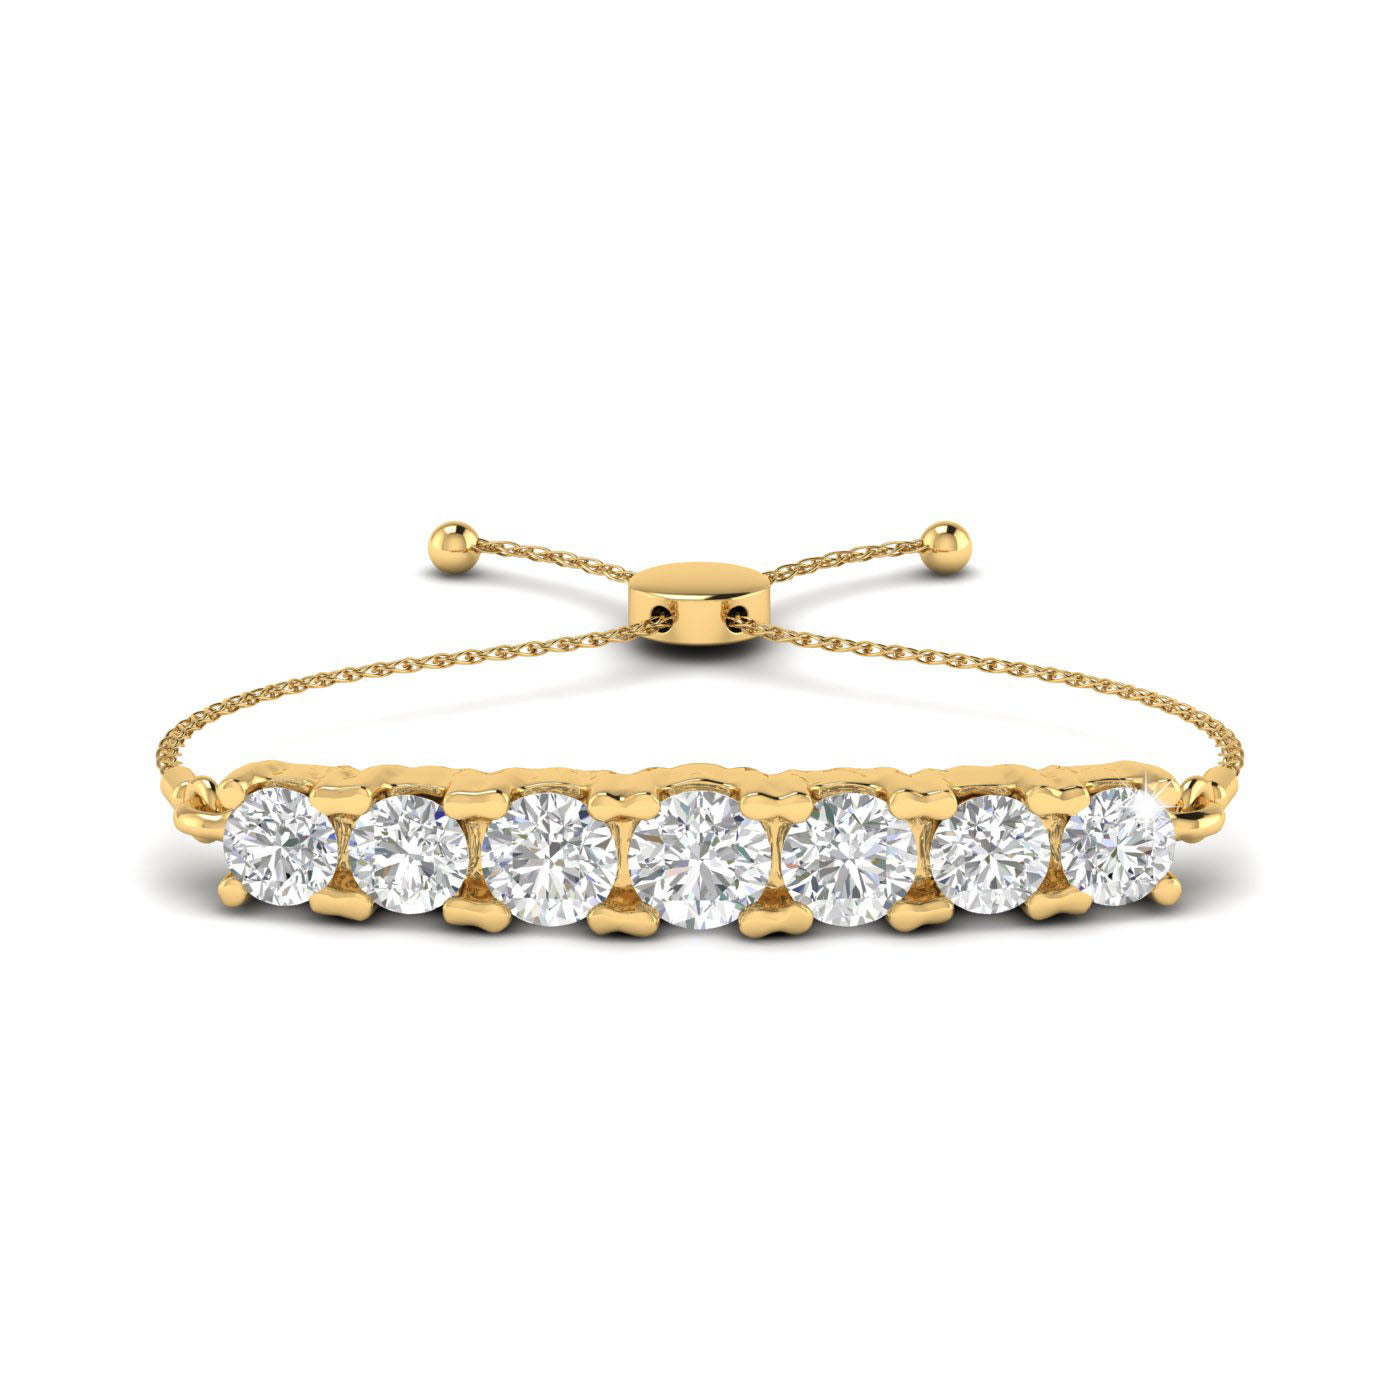 Stunning Diamond Bracelet